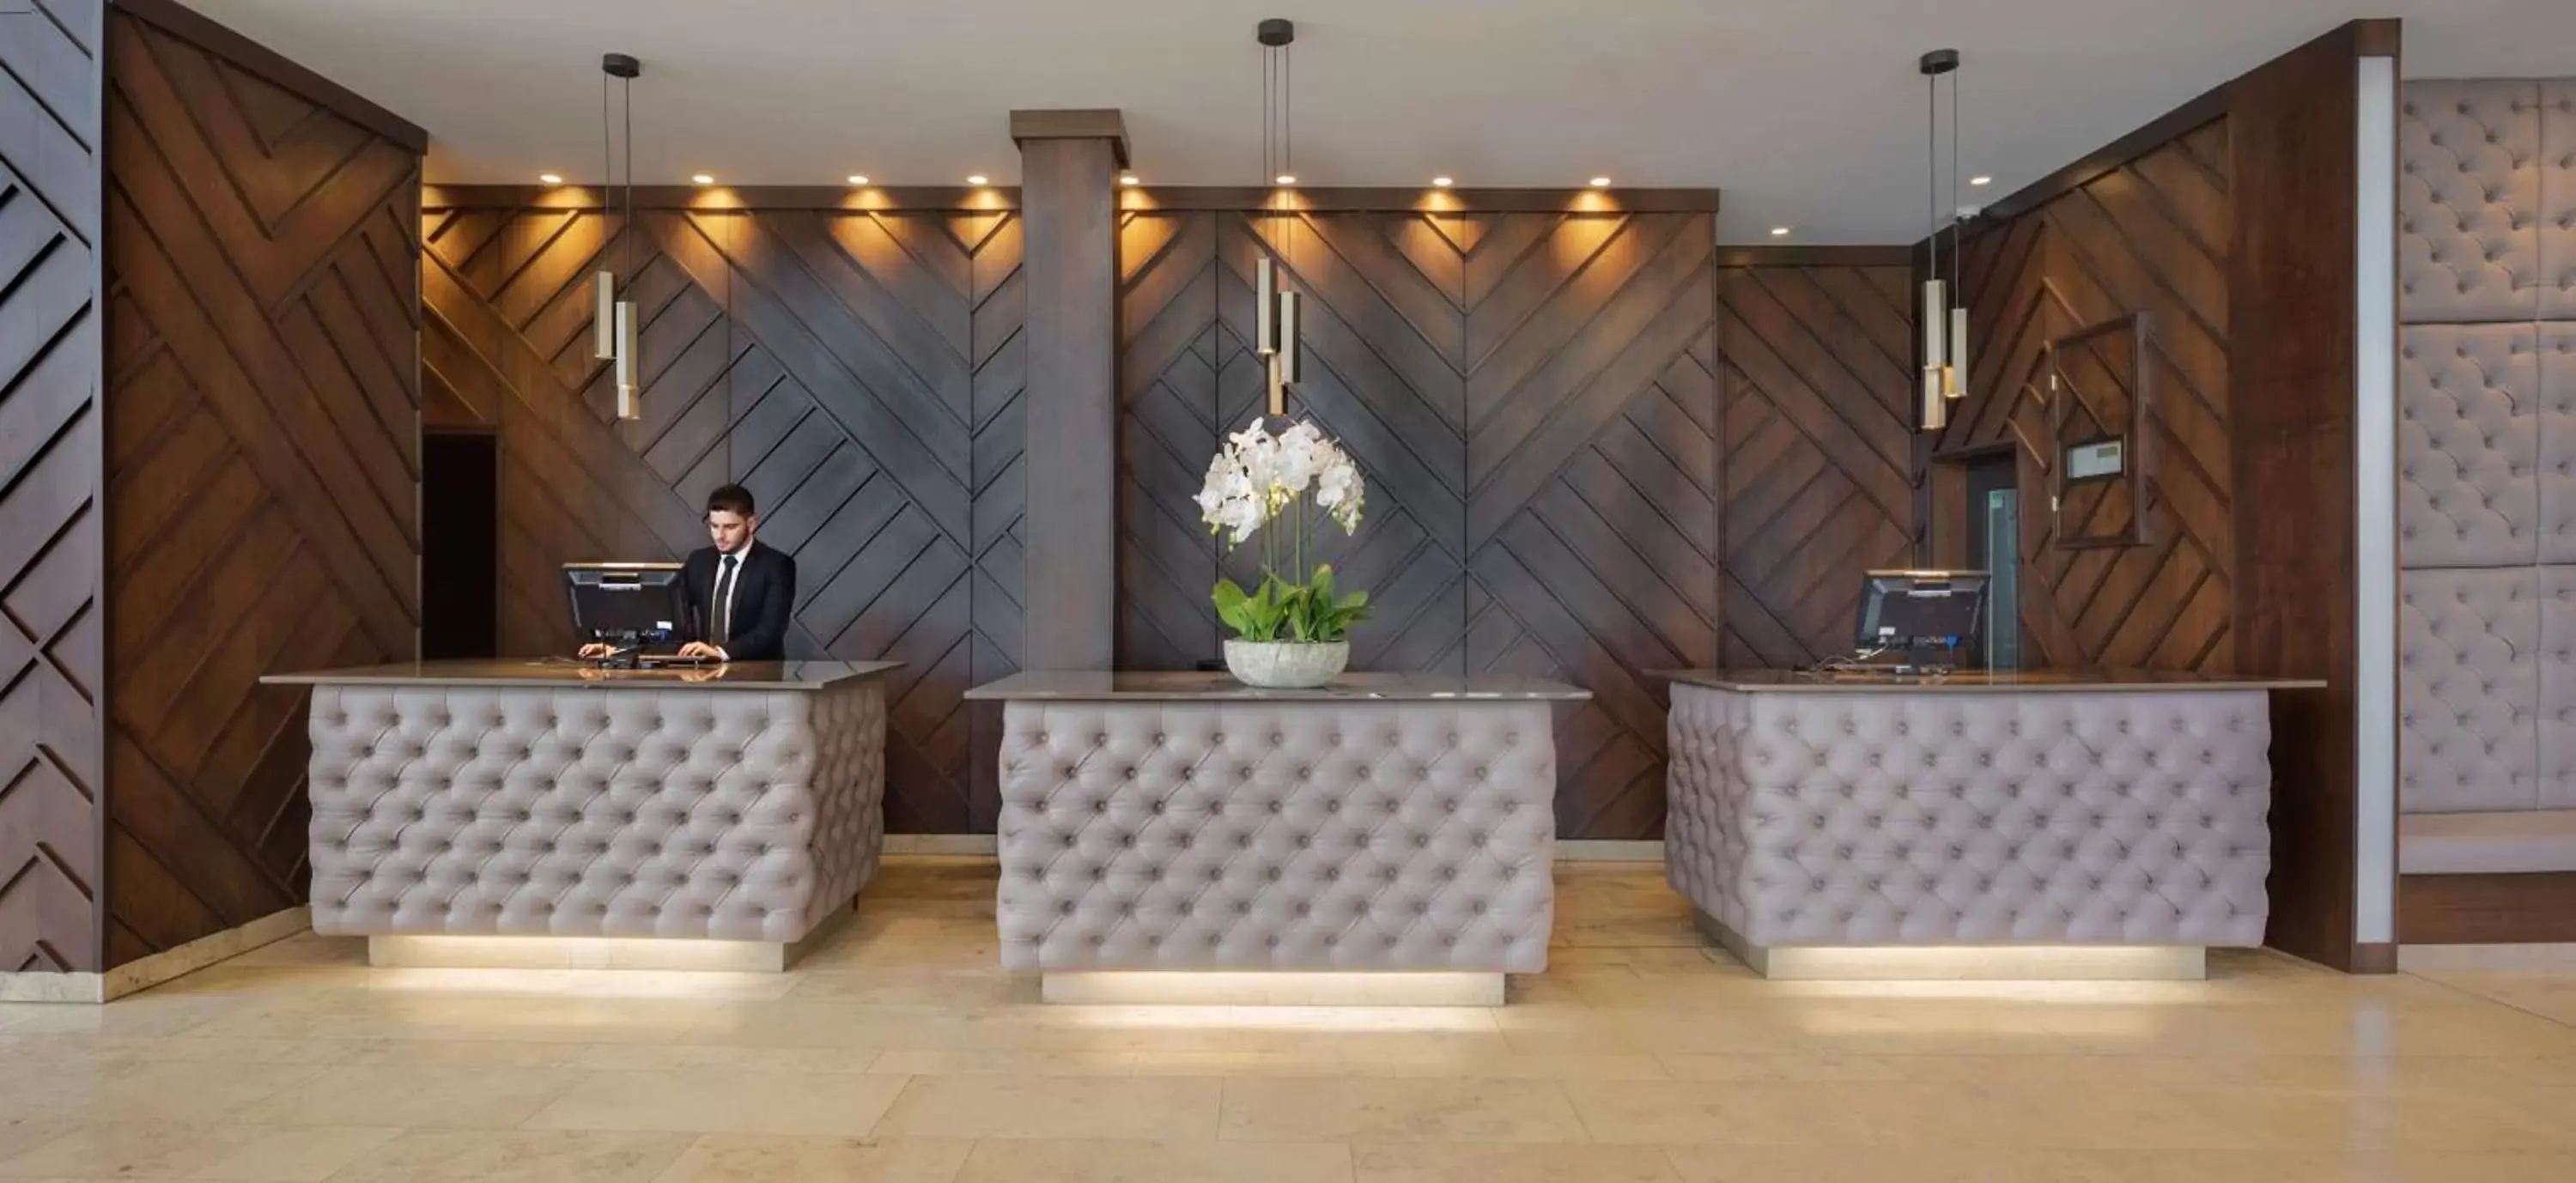 Lobby or reception, Lobby/Reception in Radisson Blu Hotel, Letterkenny